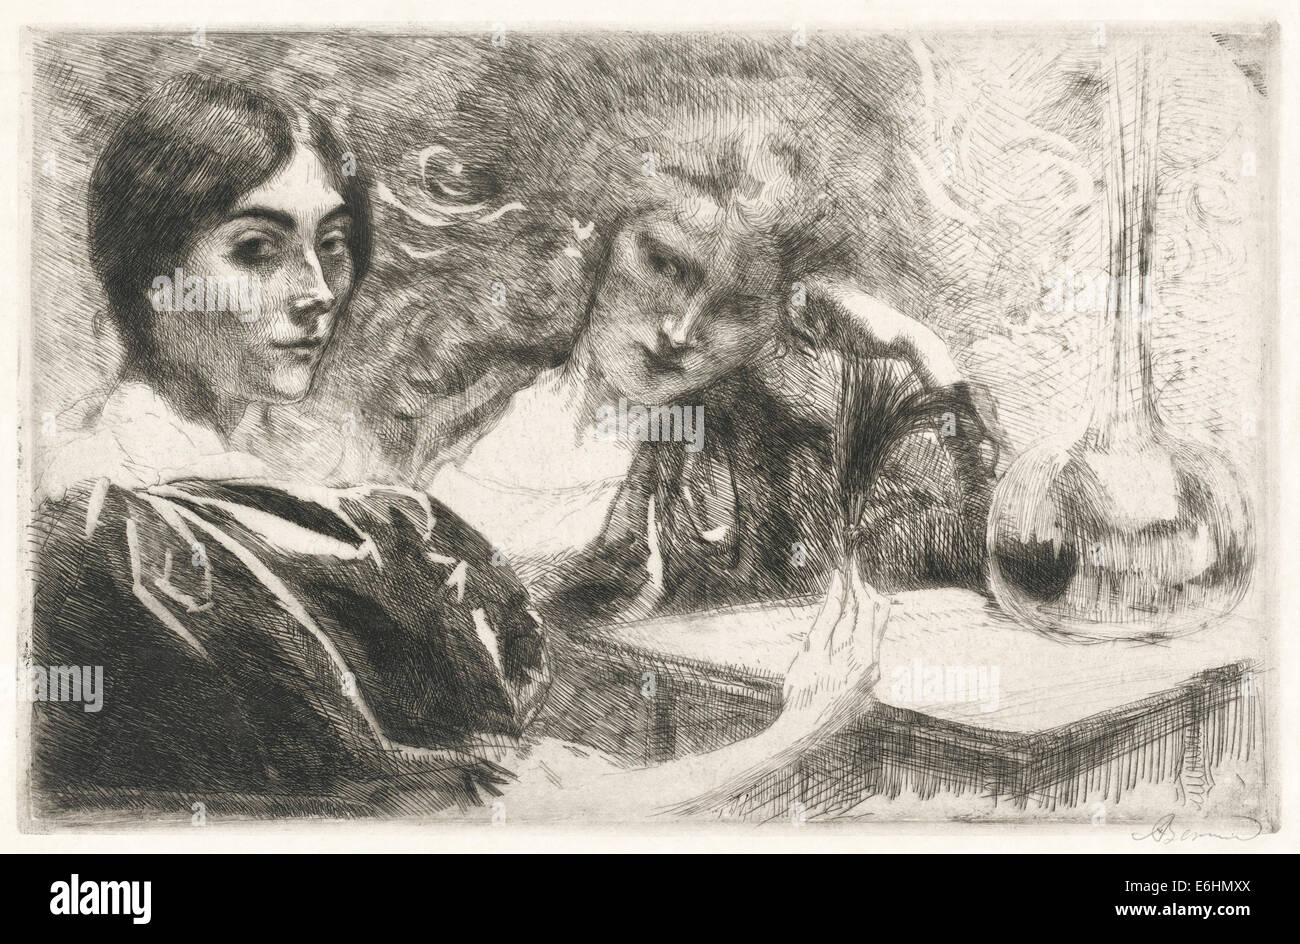 Französische Künstler Paul-Albert Besnard (1849-1934), "Morphinomanes Ou Le Plumet". Siehe Beschreibung für mehr Informationen. Stockfoto